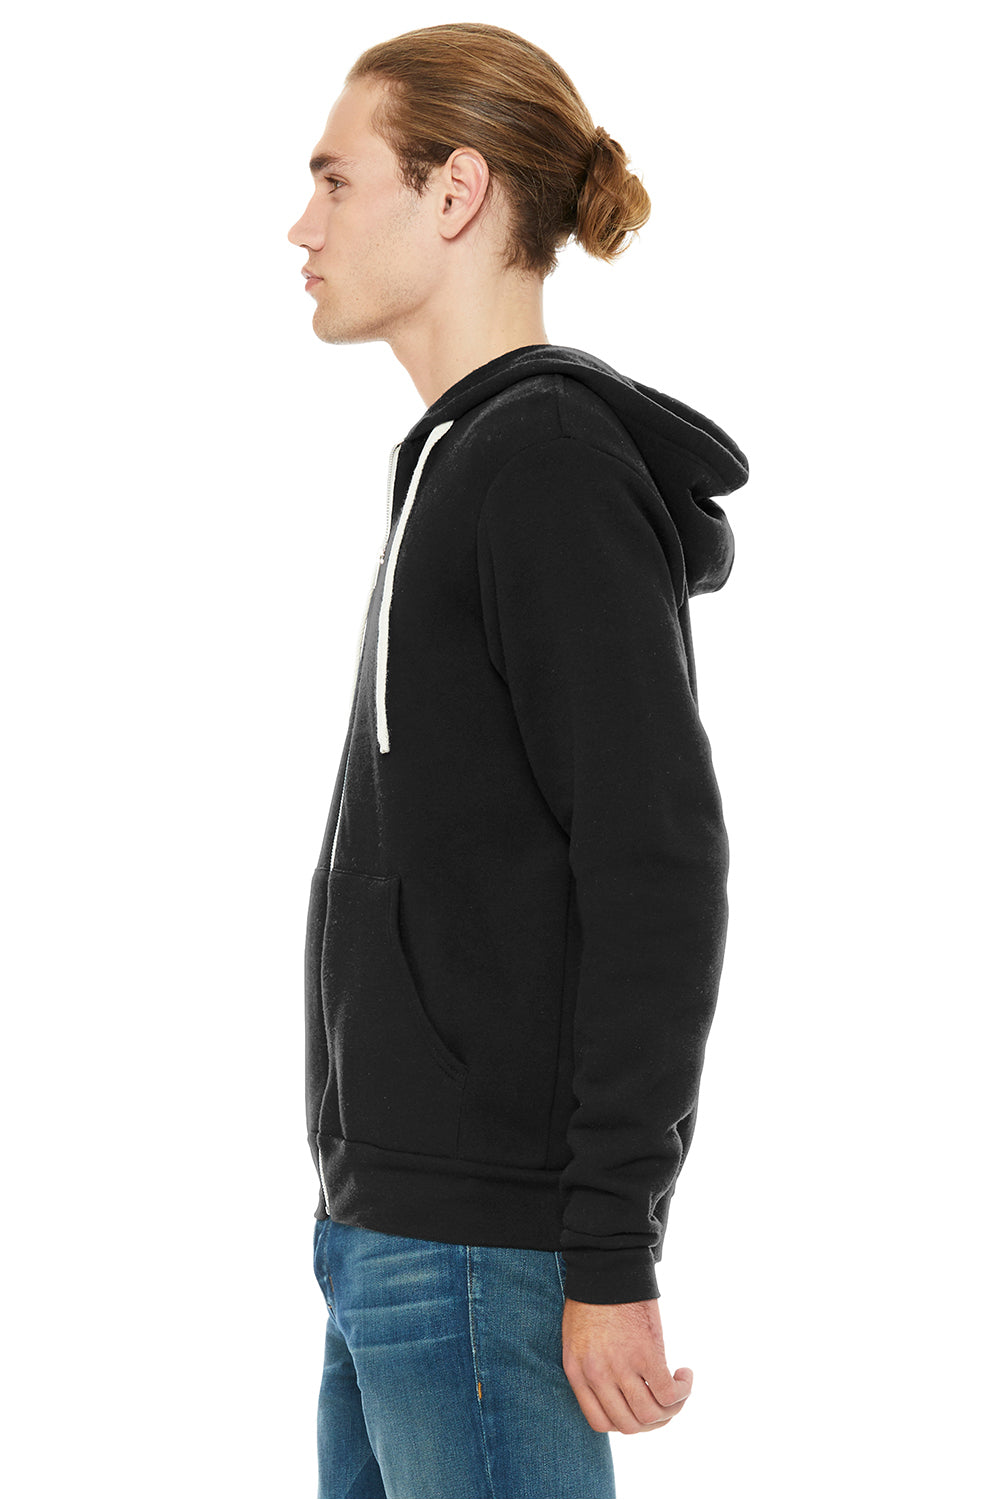 Bella + Canvas BC3909/3909 Mens Sponge Fleece Full Zip Hooded Sweatshirt Hoodie Solid Black Model Side